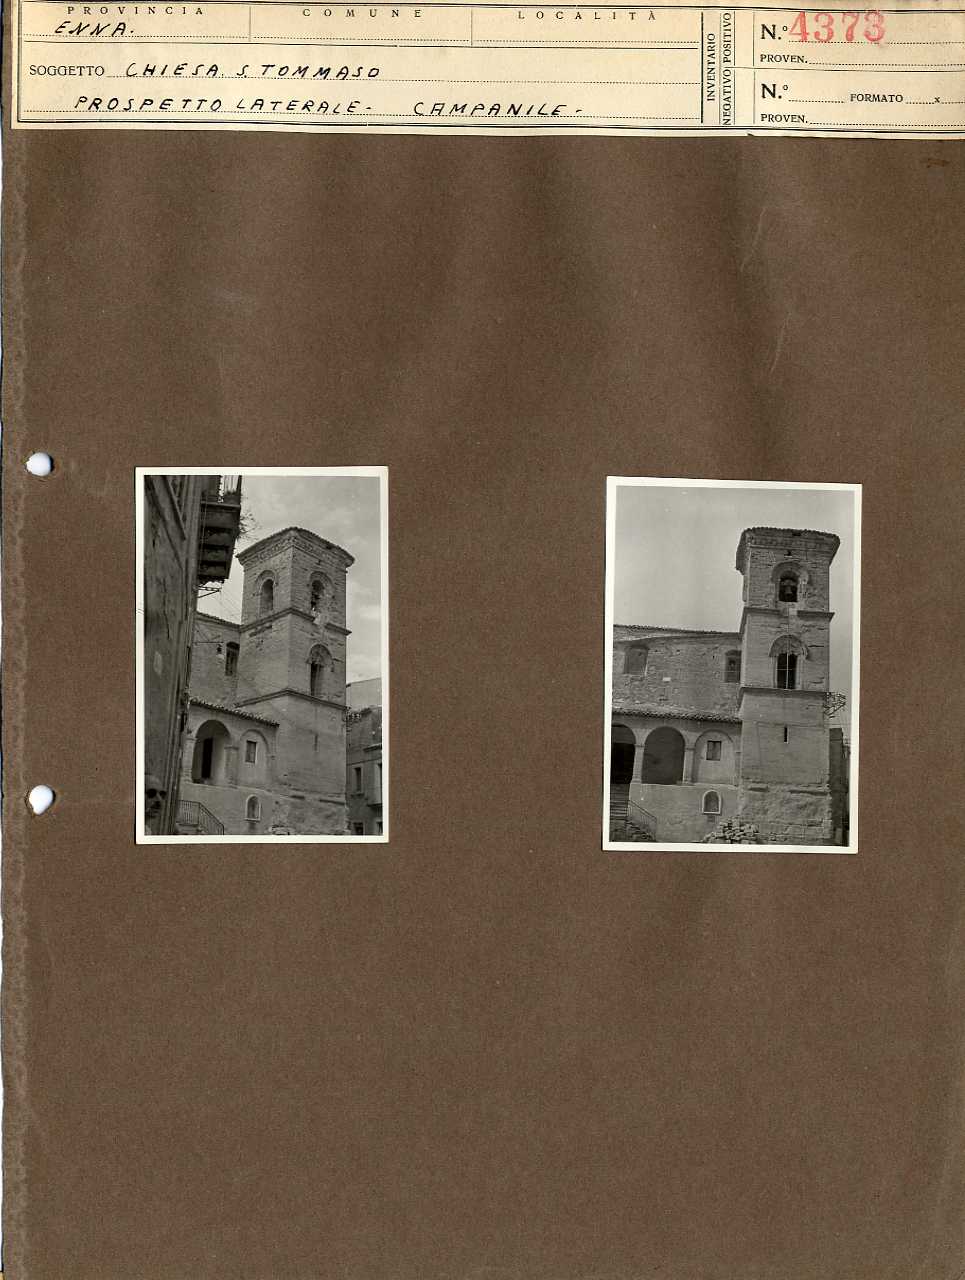 Sicilia - Enna - Architettura religiosa - Chiesa di San Tommaso (positivo, elemento-parte componente, scheda di supporto) di Anonimo <1945 - 1955> (metà XX)